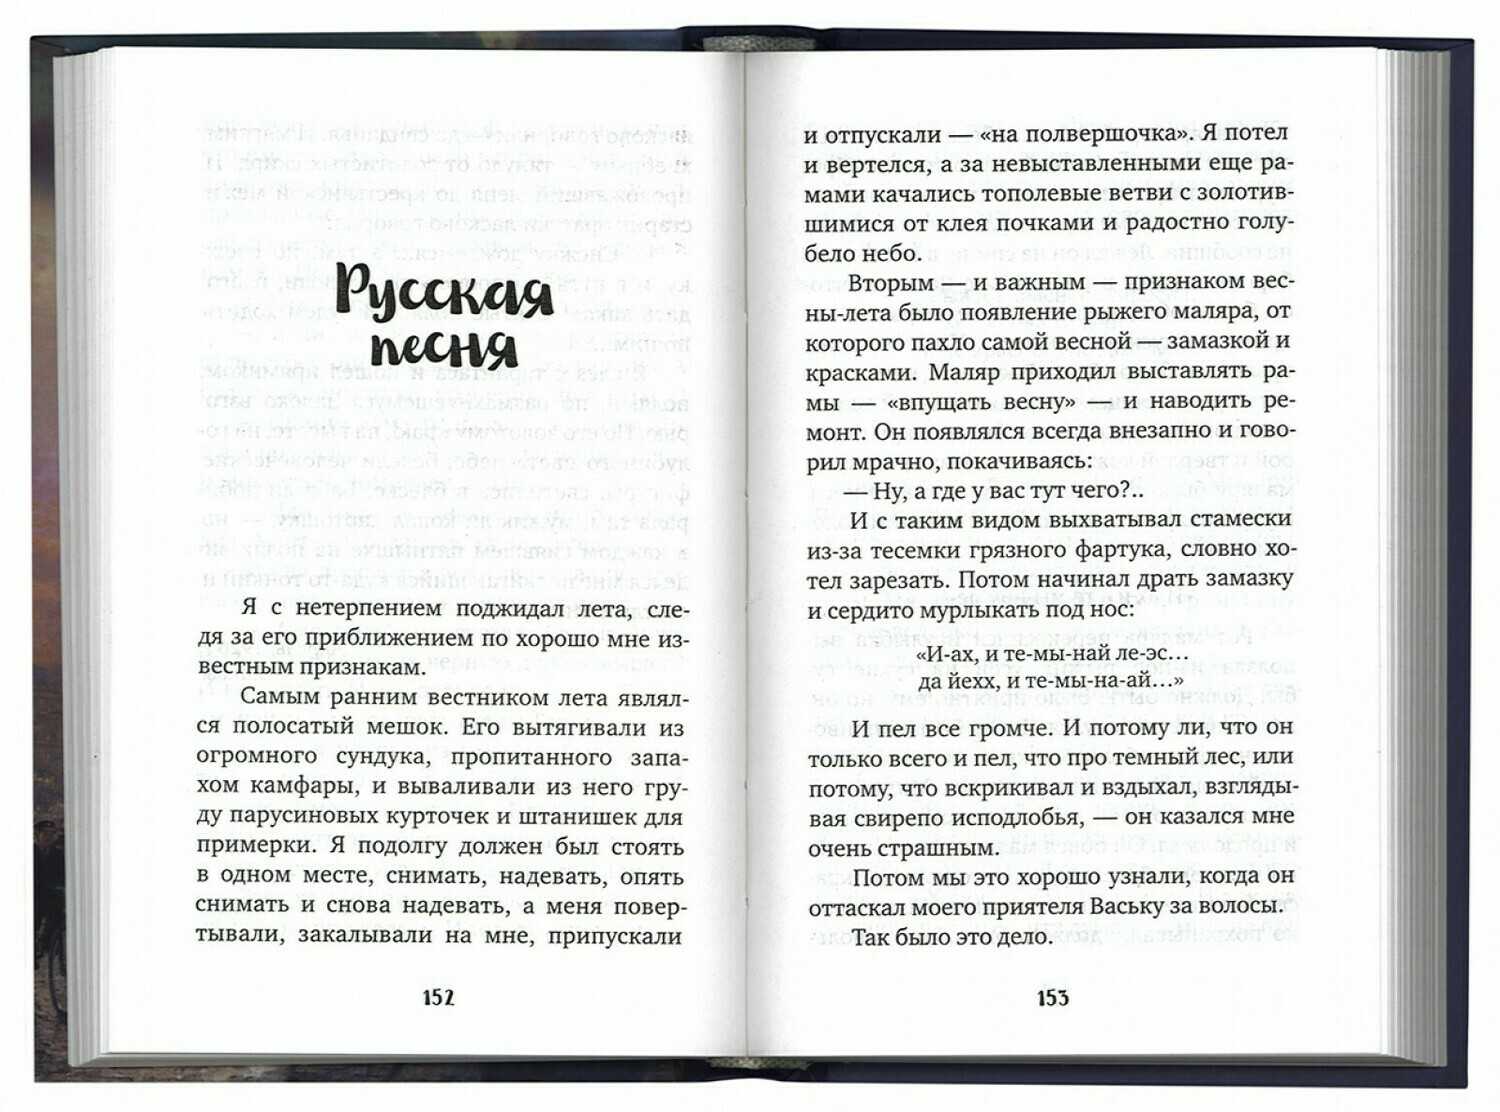 Краткое содержание шмелев русская песня для читательского дневника